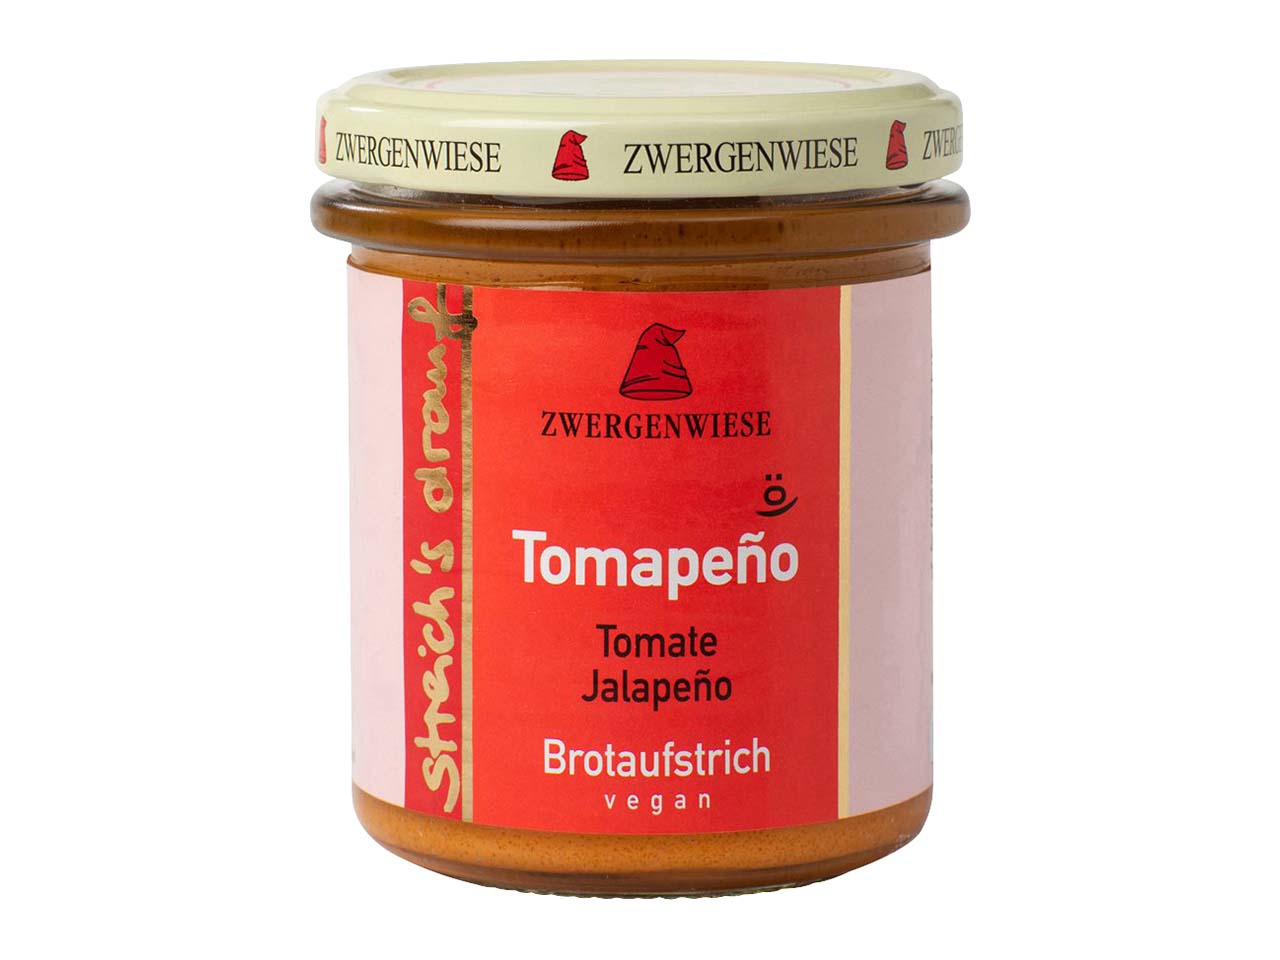 Zwergenwiese streich's drauf Tomapeno "Tomate und Jalapeno" vegan